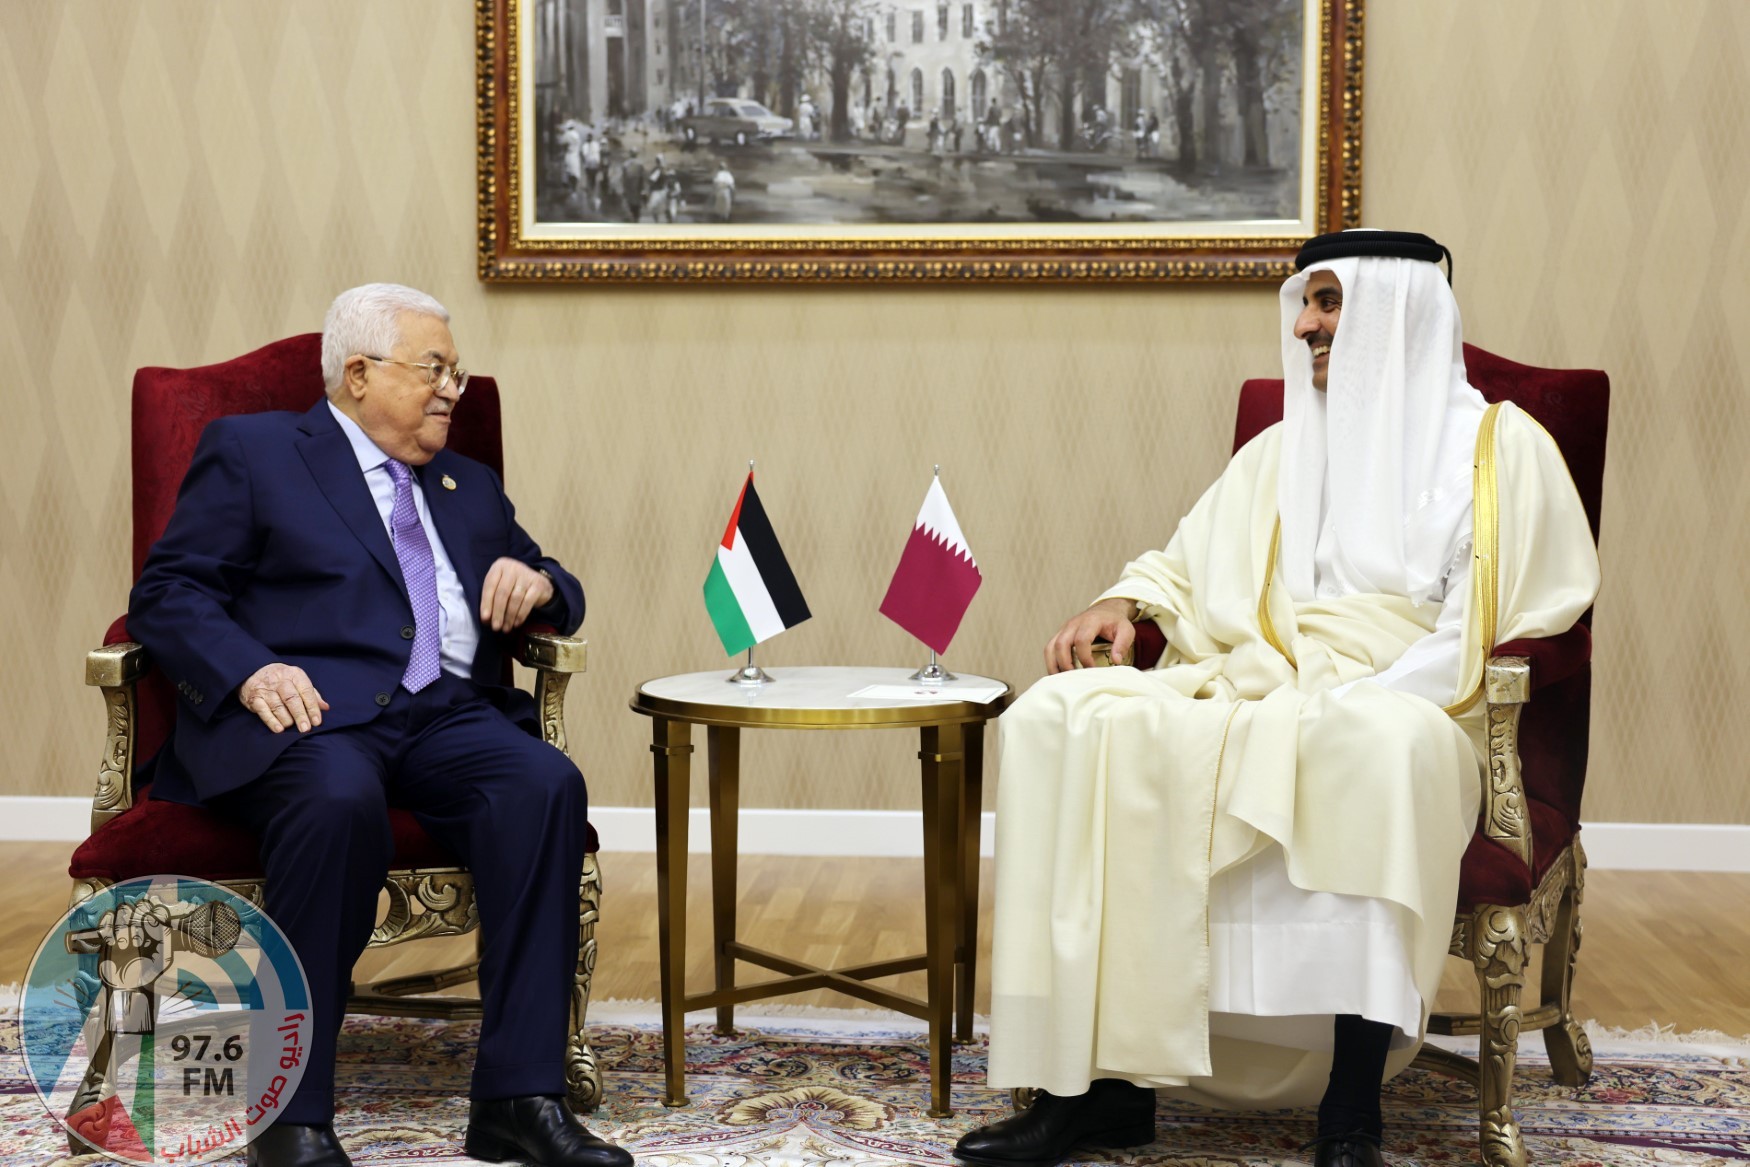 الرئيس يجتمع مع أمير قطر على هامش قمة "سيكا"